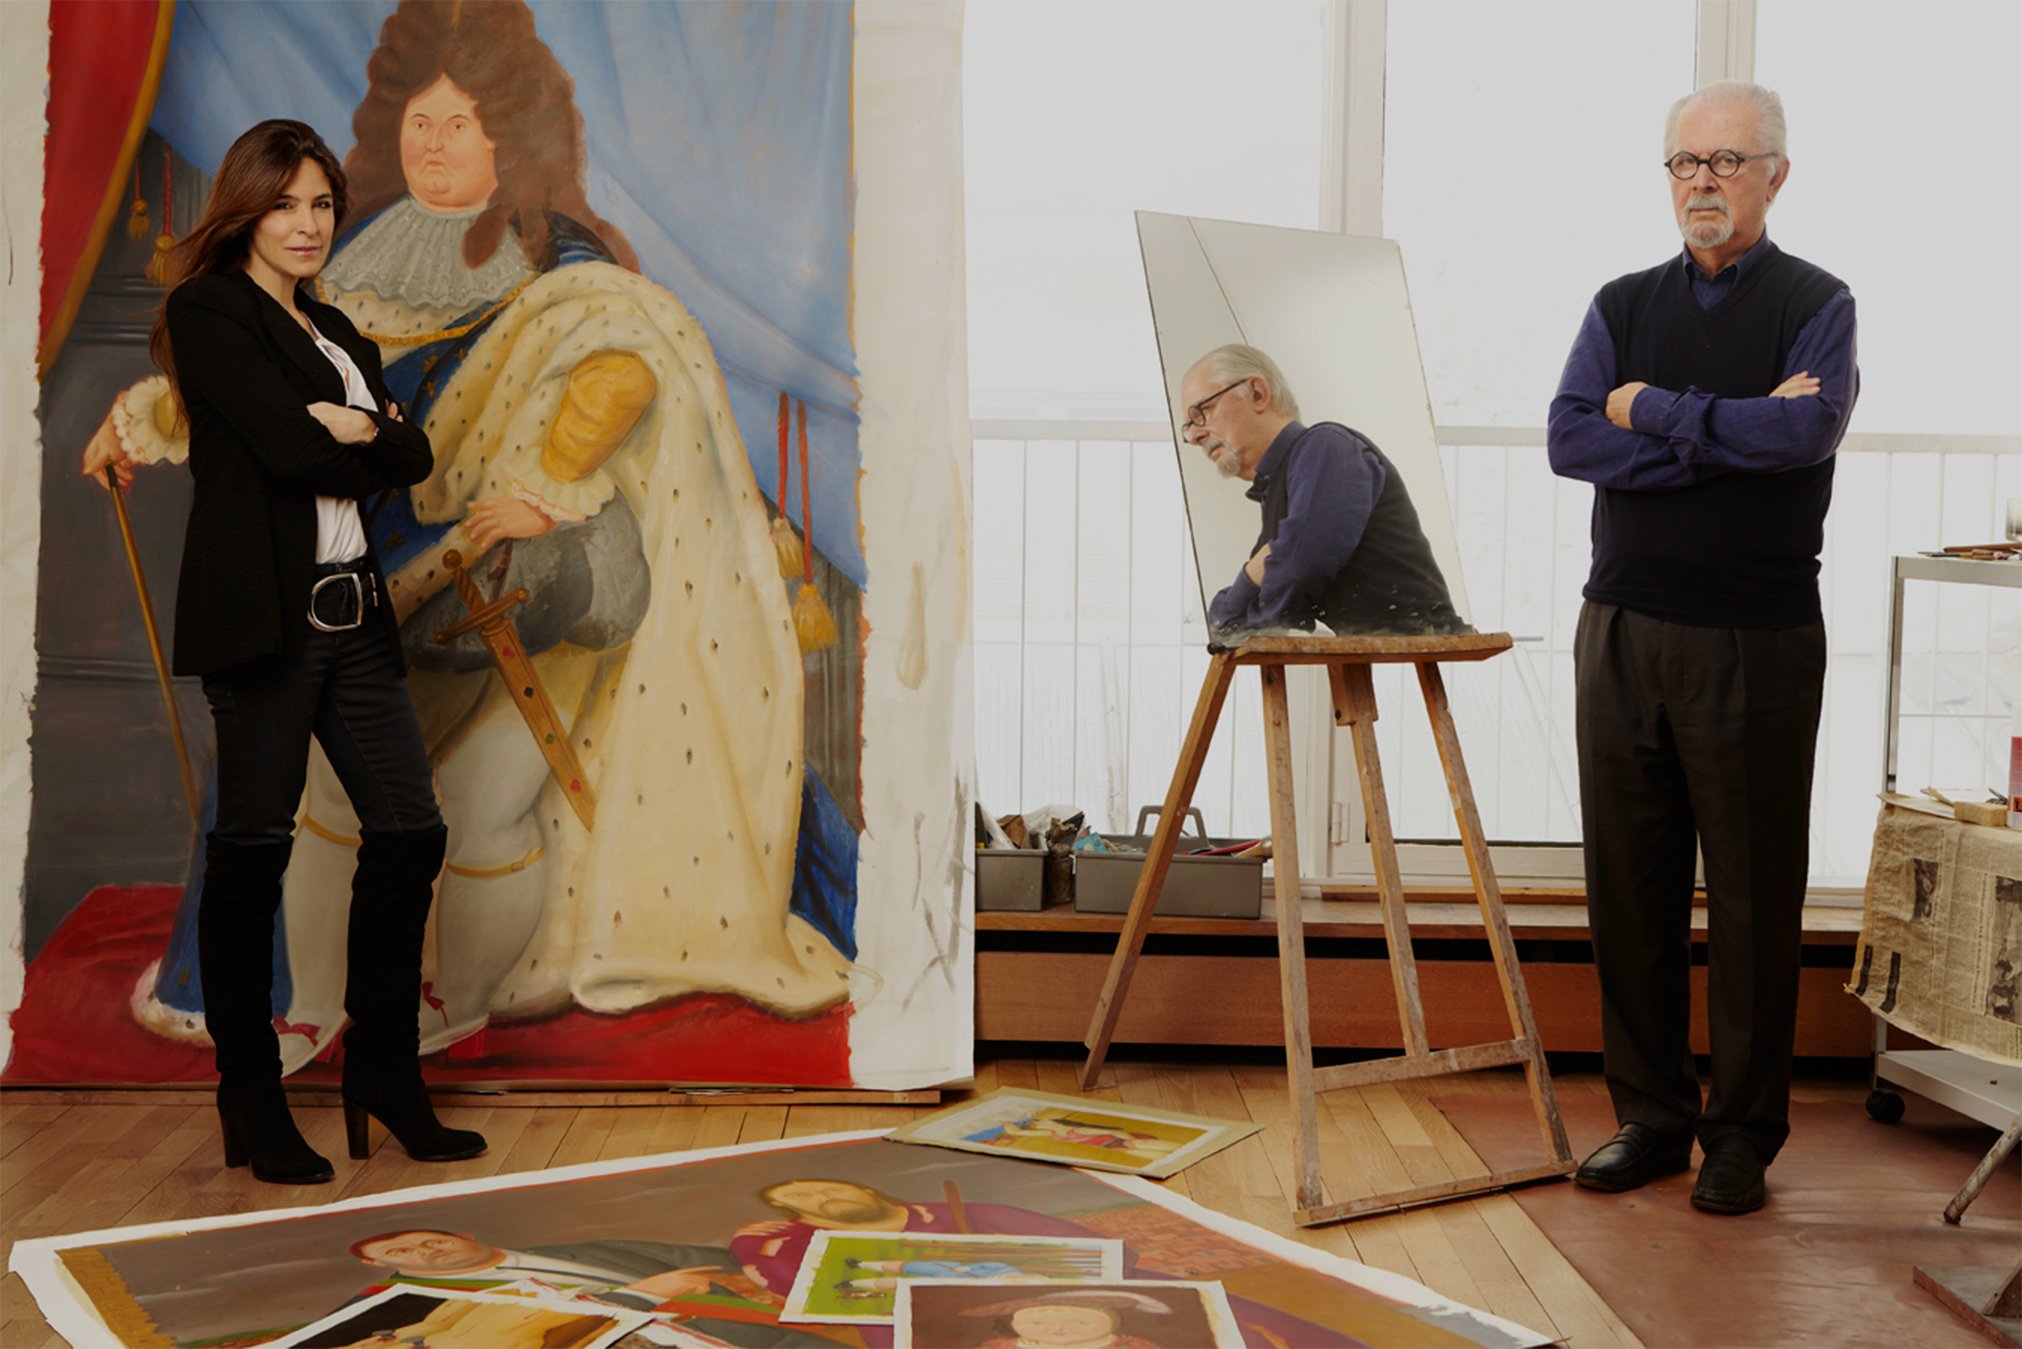  - Gloria Zea y Fernando Botero: una historia de amor atravesada por el arte